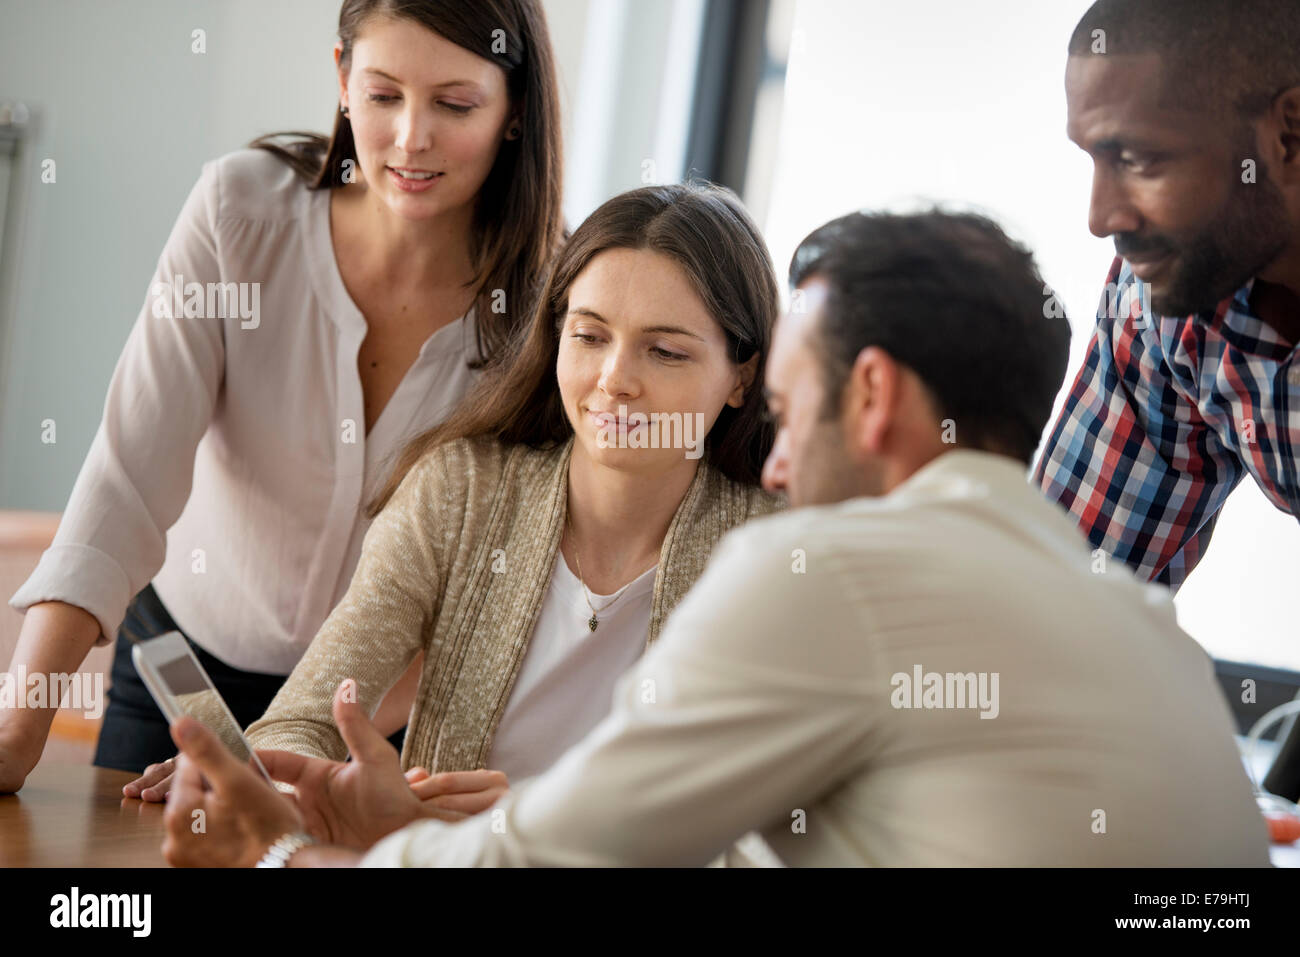 Quatre personnes, hommes et femmes, regroupés autour d'une tablette numérique, regarder l'écran. Banque D'Images